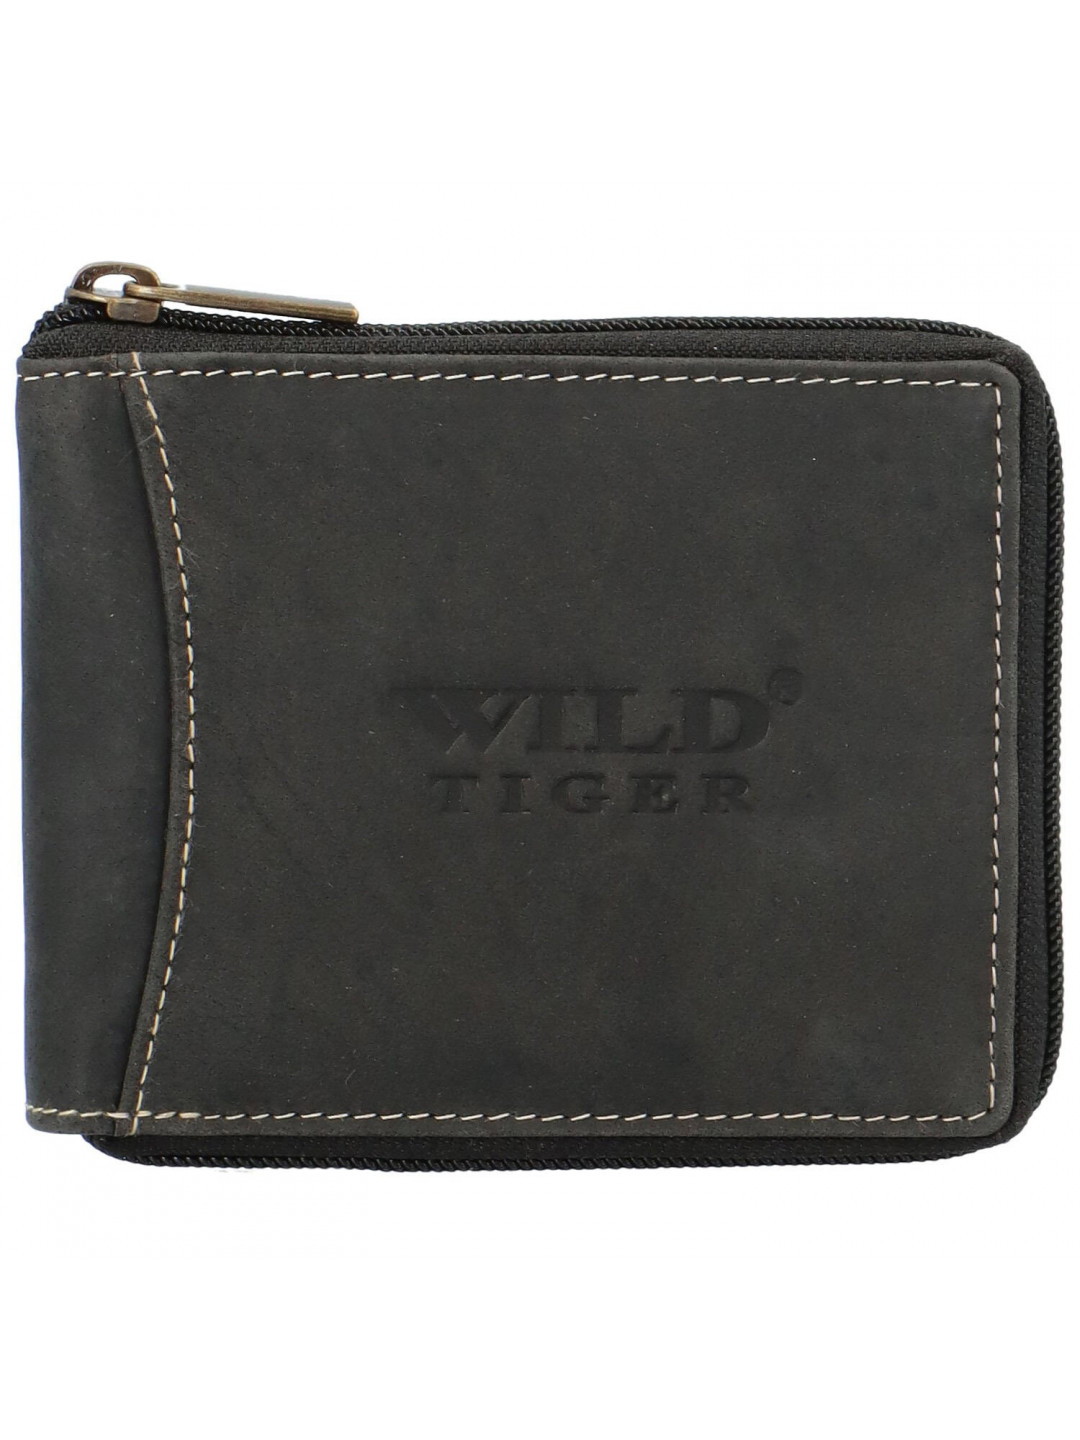 Pánská kožená peněženka černá – Wild Tiger Simon